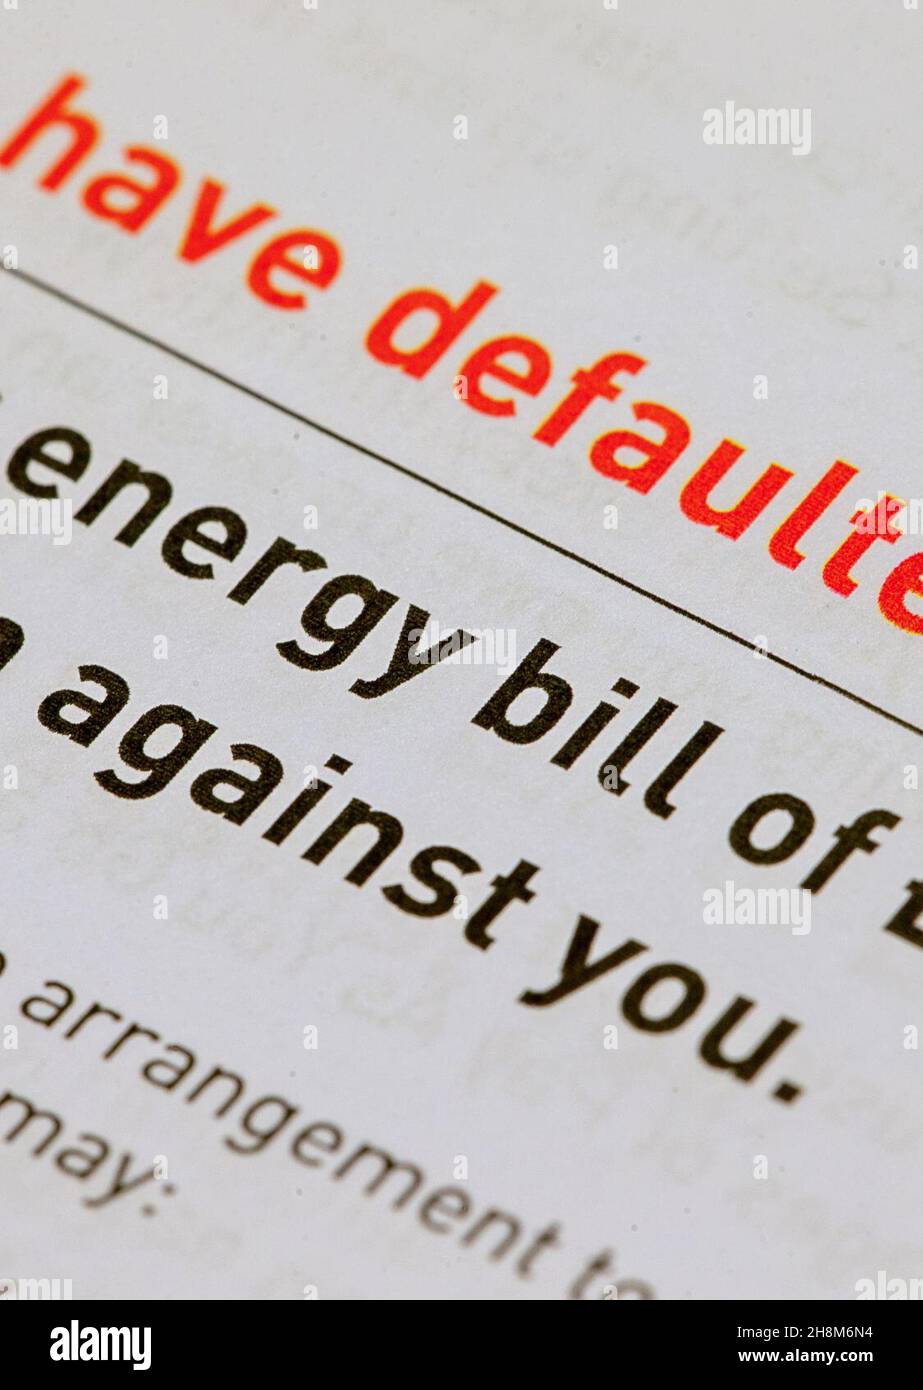 Una bolletta energetica che sostiene che il cliente ha inadempiuto al pagamento. Data foto: Mercoledì 1 dicembre 2021. Foto Stock